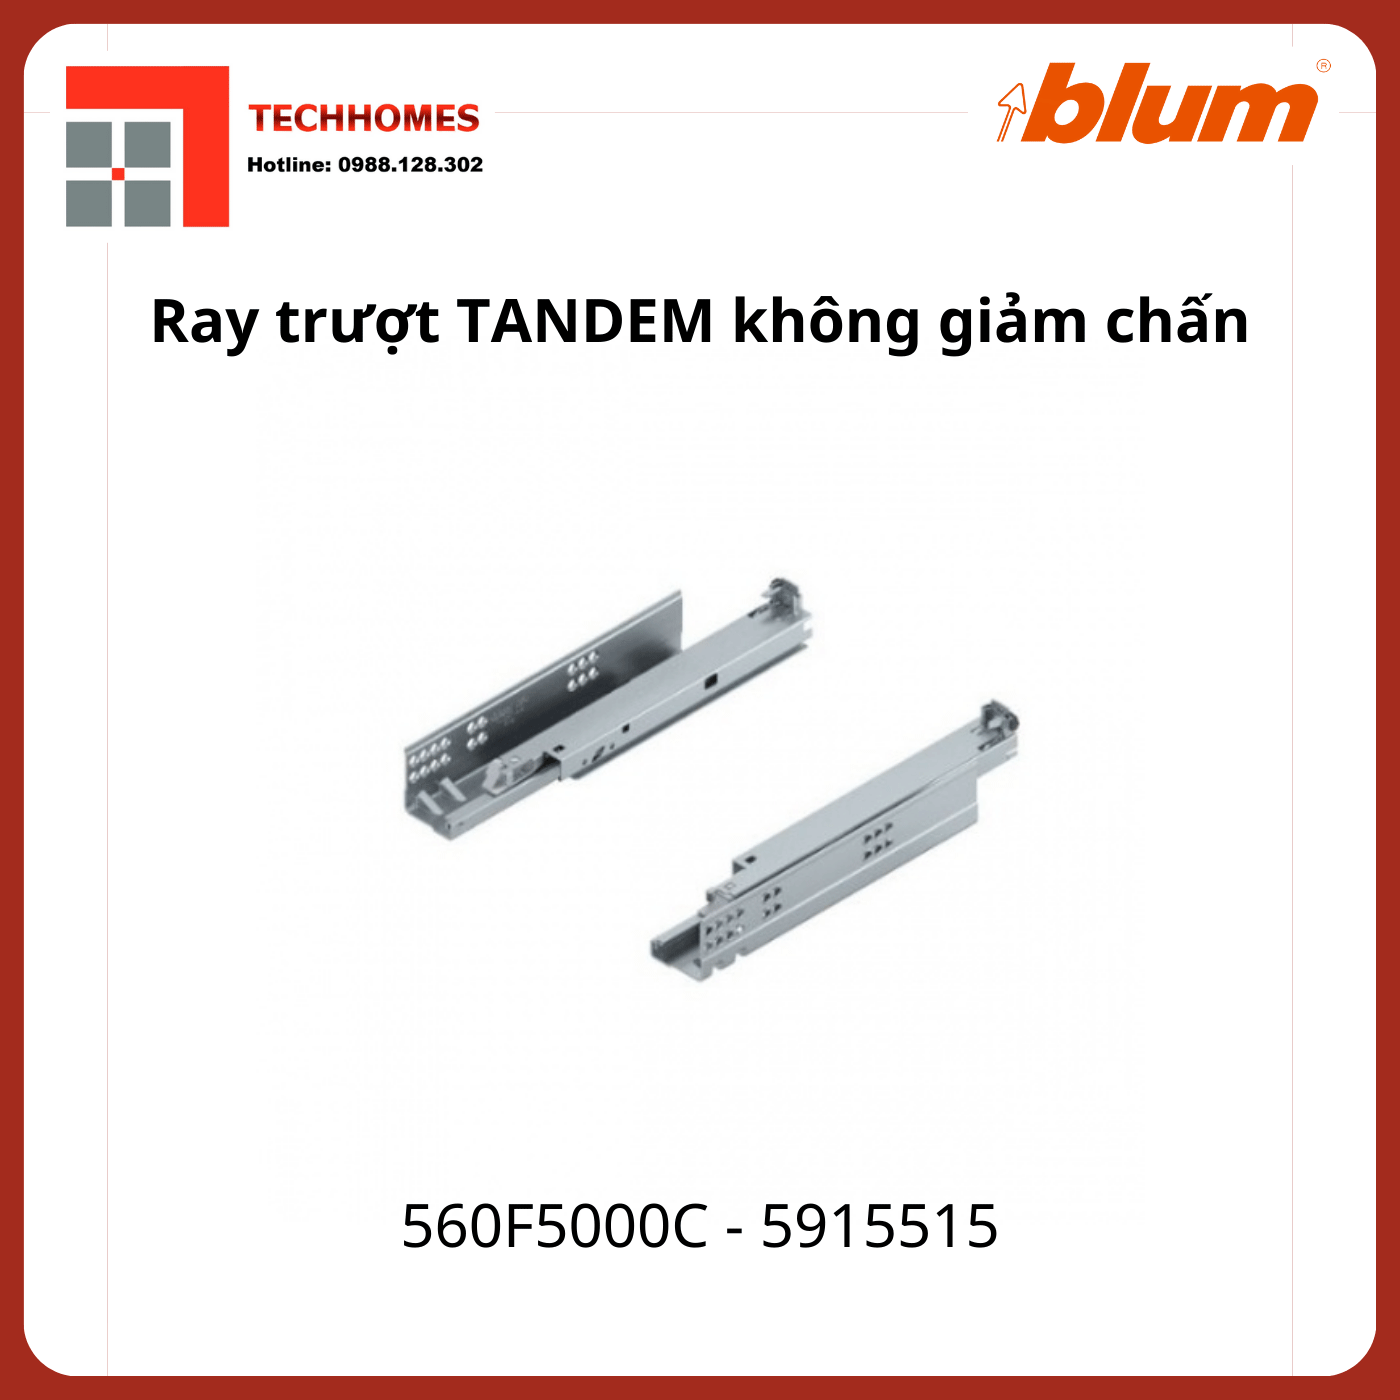 Ray trượt Blum TANDEM không giảm chấn 560F5000C 5915515 toàn phần, 30kg